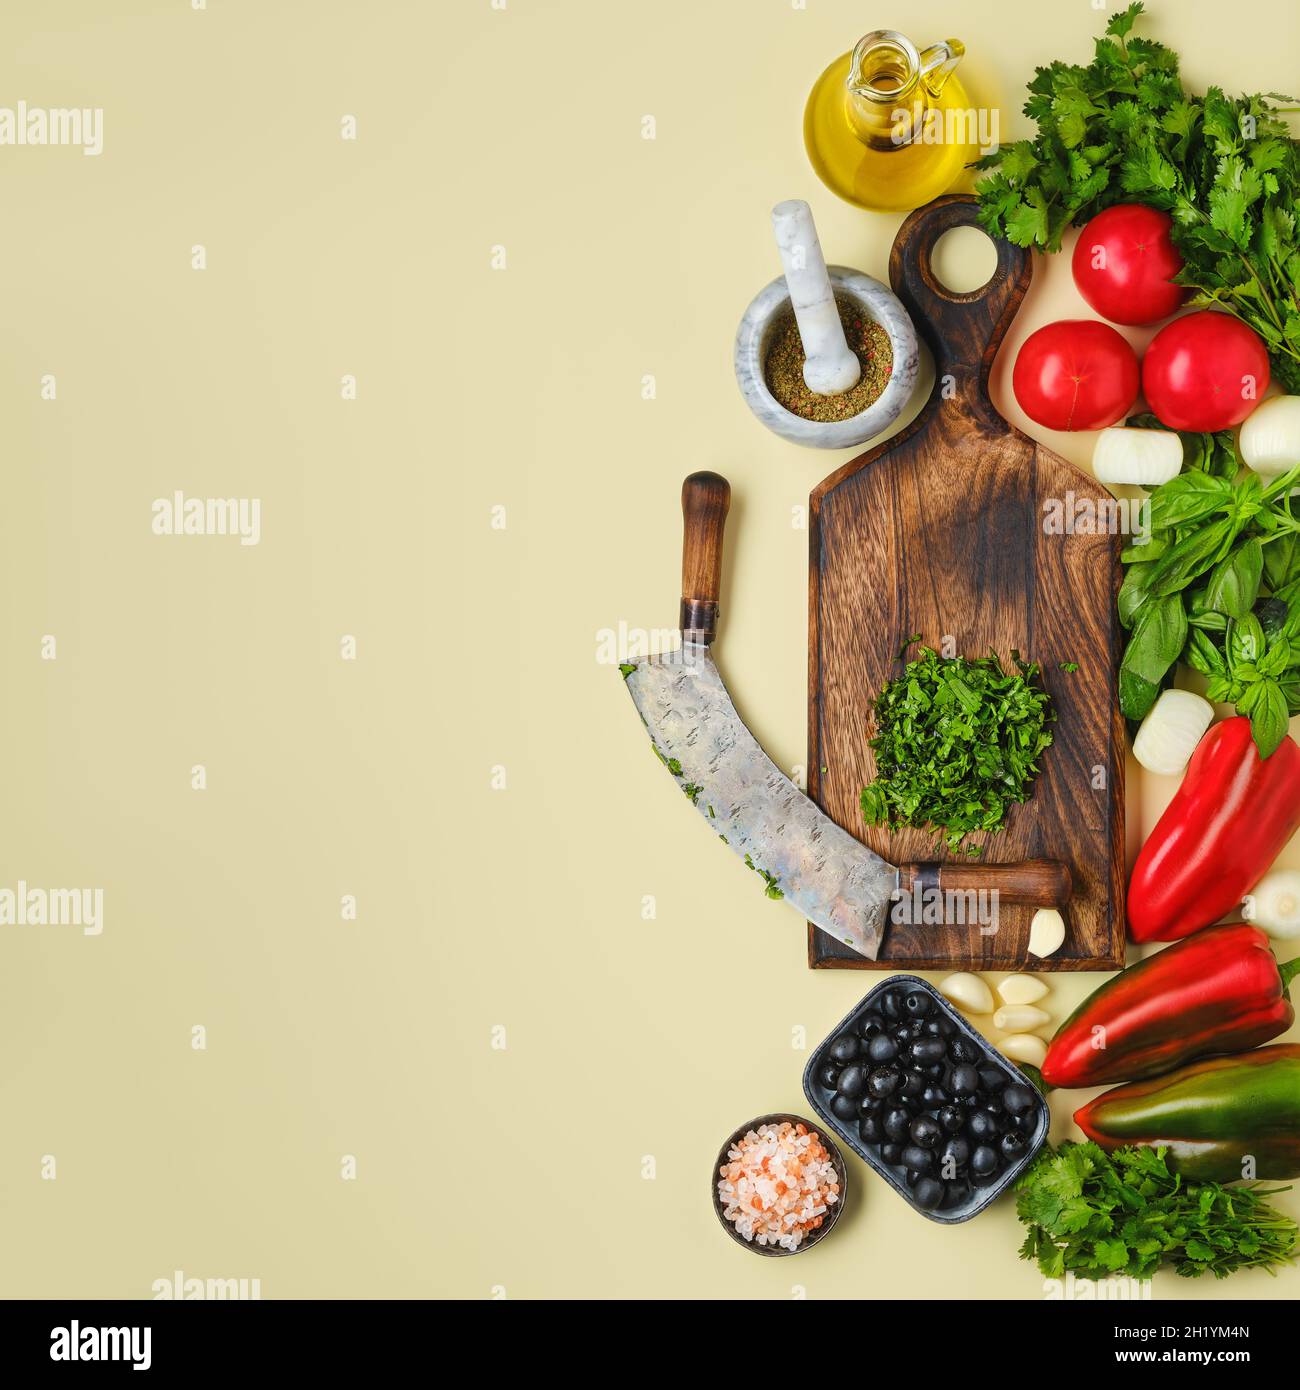 Vue de dessus de mezzaluna et légumes frais.Concept World vegan Food Day. Banque D'Images